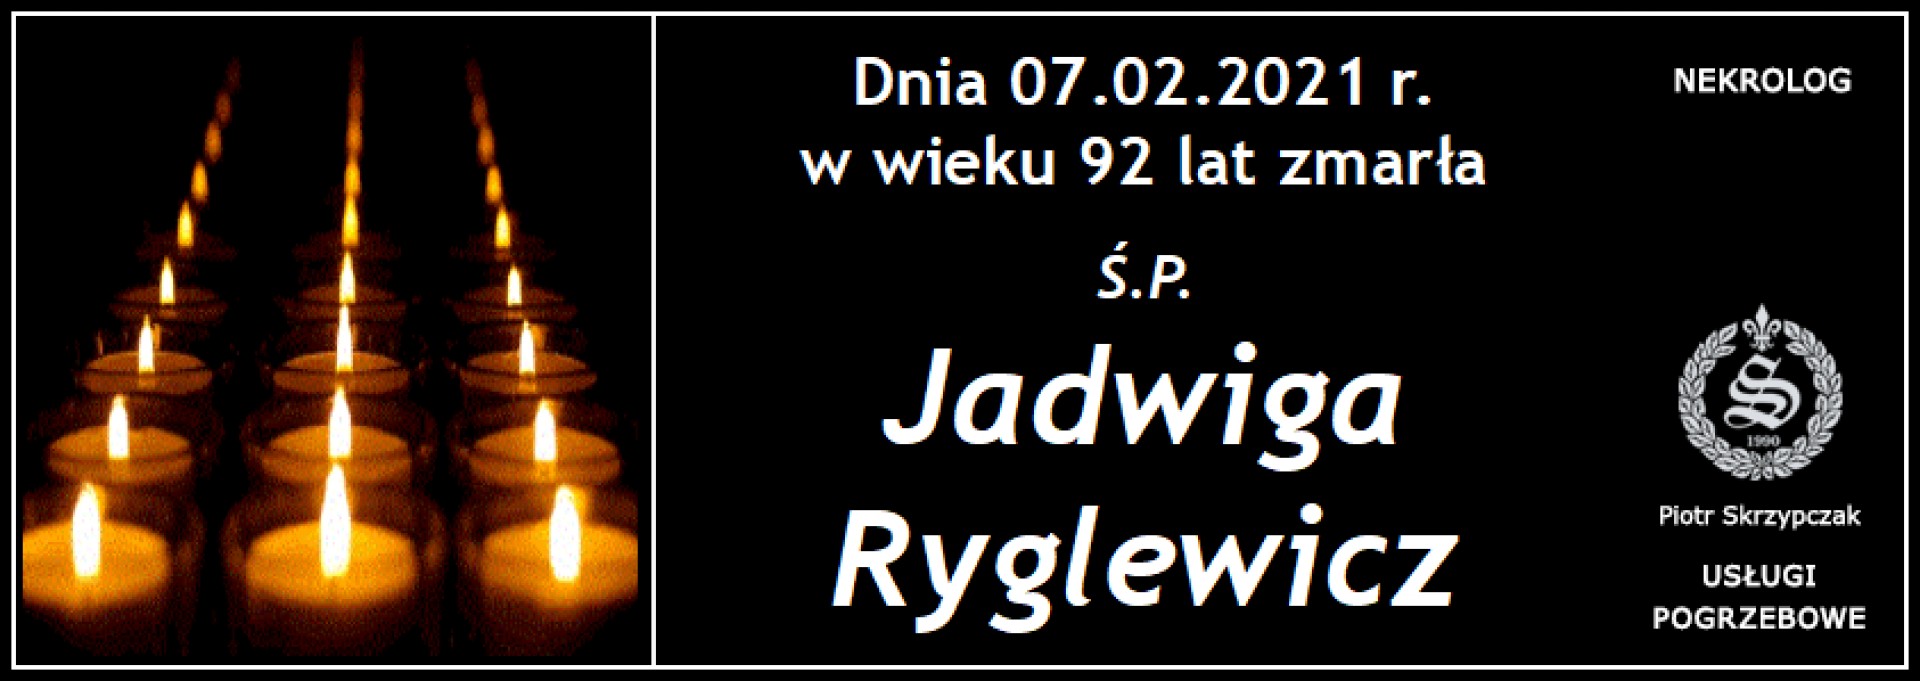 Ś.P. Jadwiga Ryglewicz